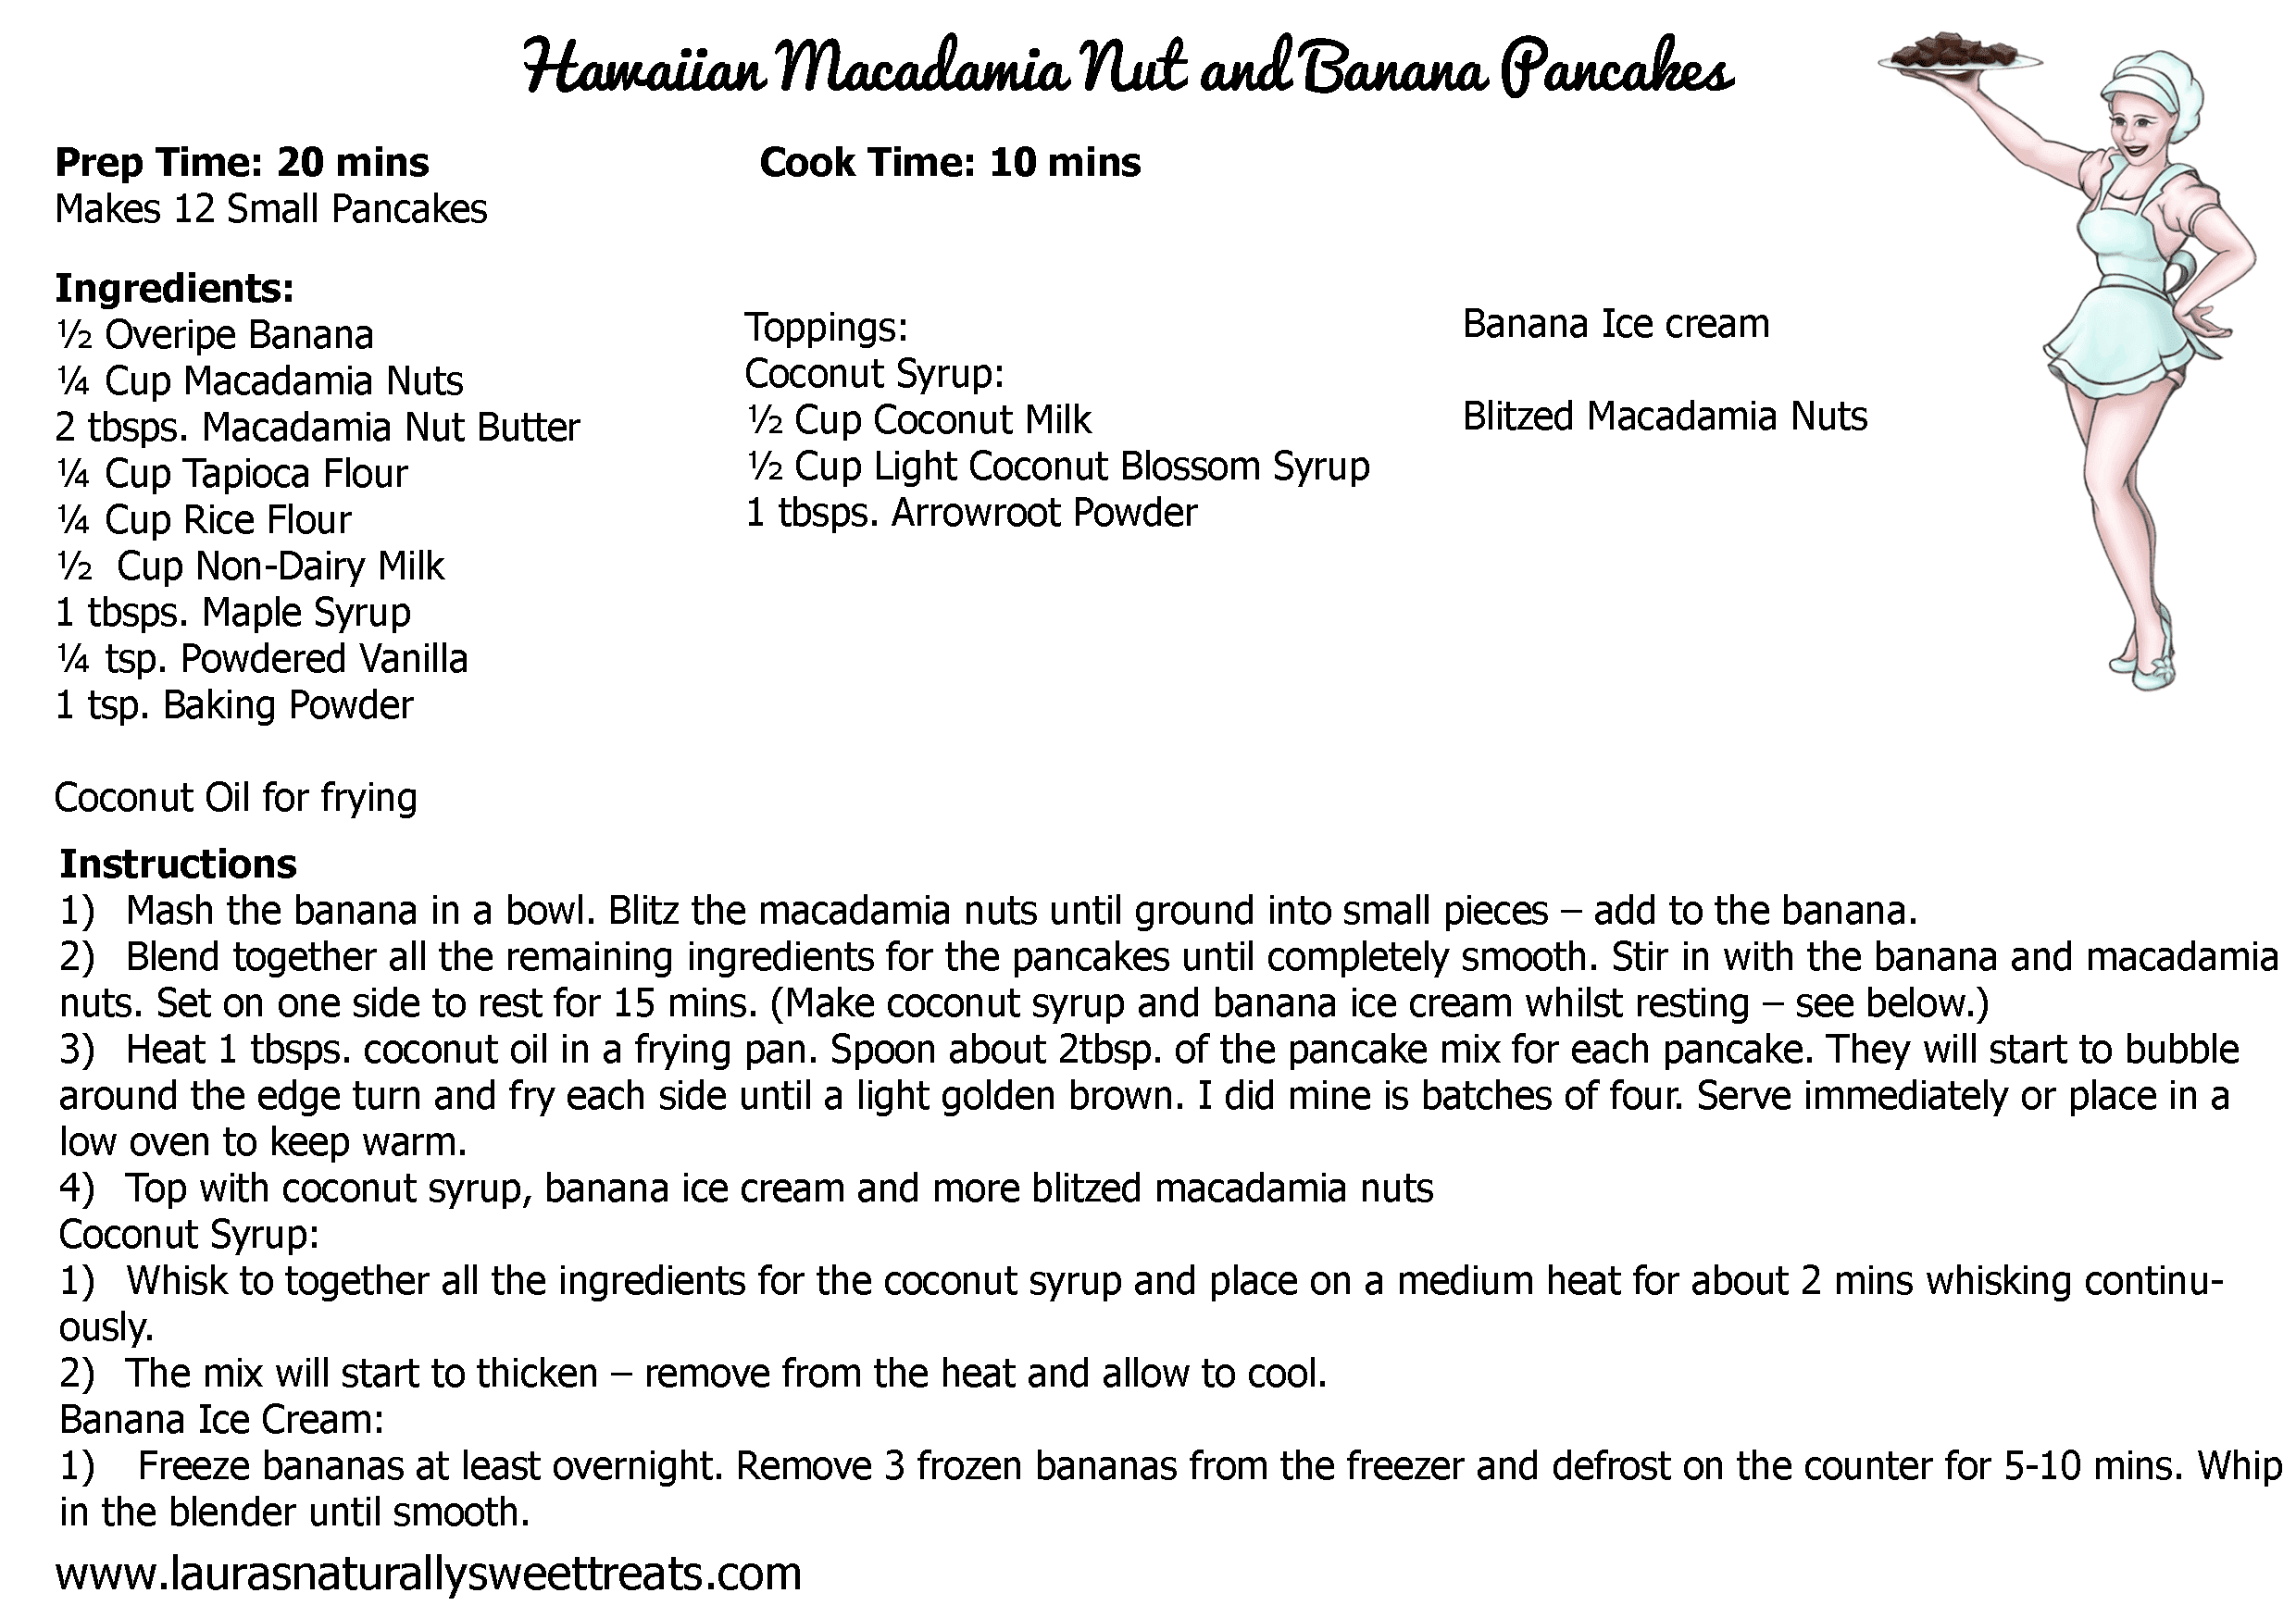 hawaiian macadamia nut and banana pancakes recipe card